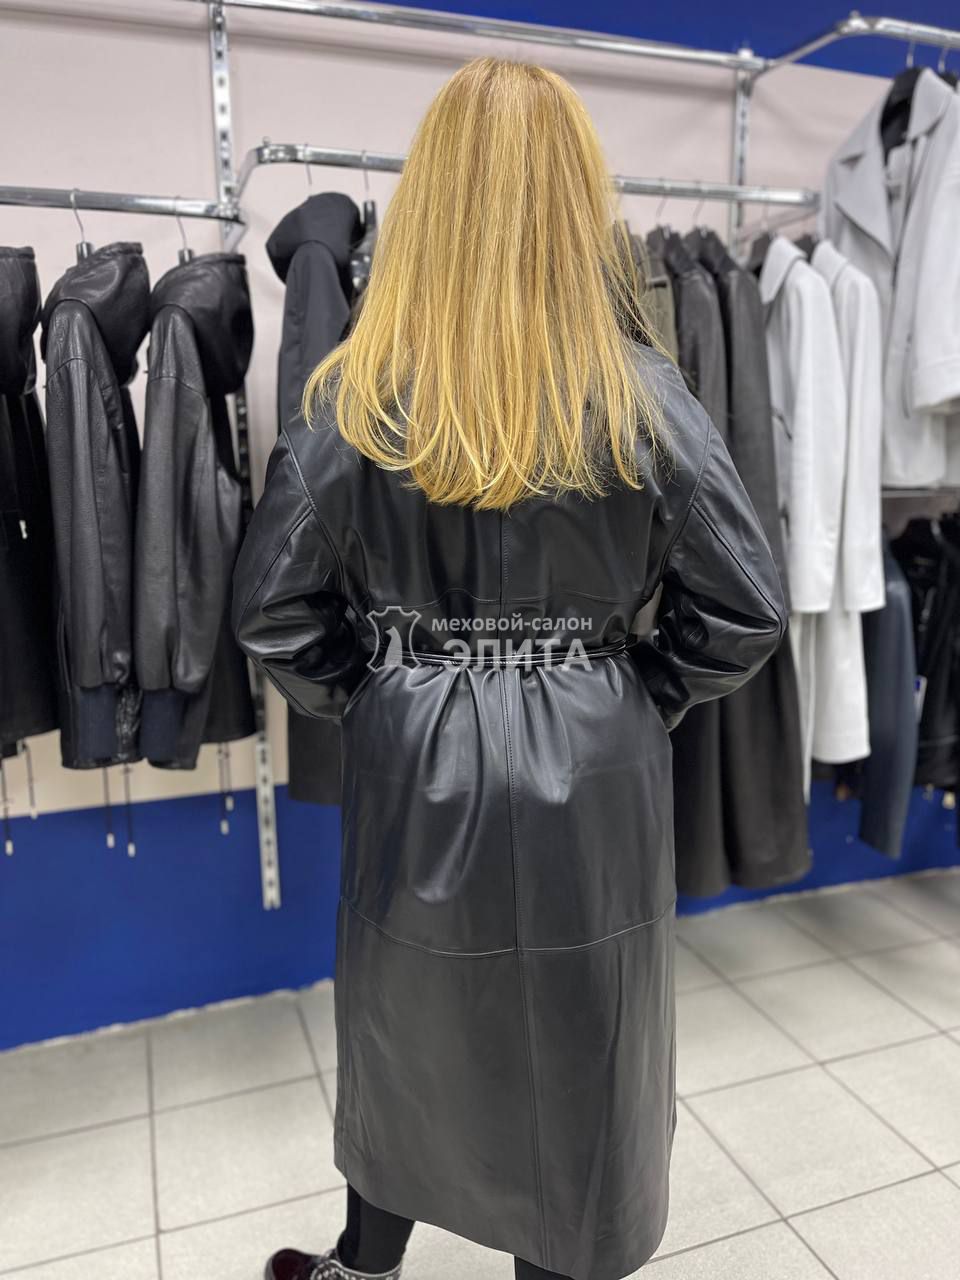 Пальто кожаное м-F2-08 p-p 46-52, цена 37100 рублей в интернет-магазине кожи и меха ЭЛИТА. Вид 2